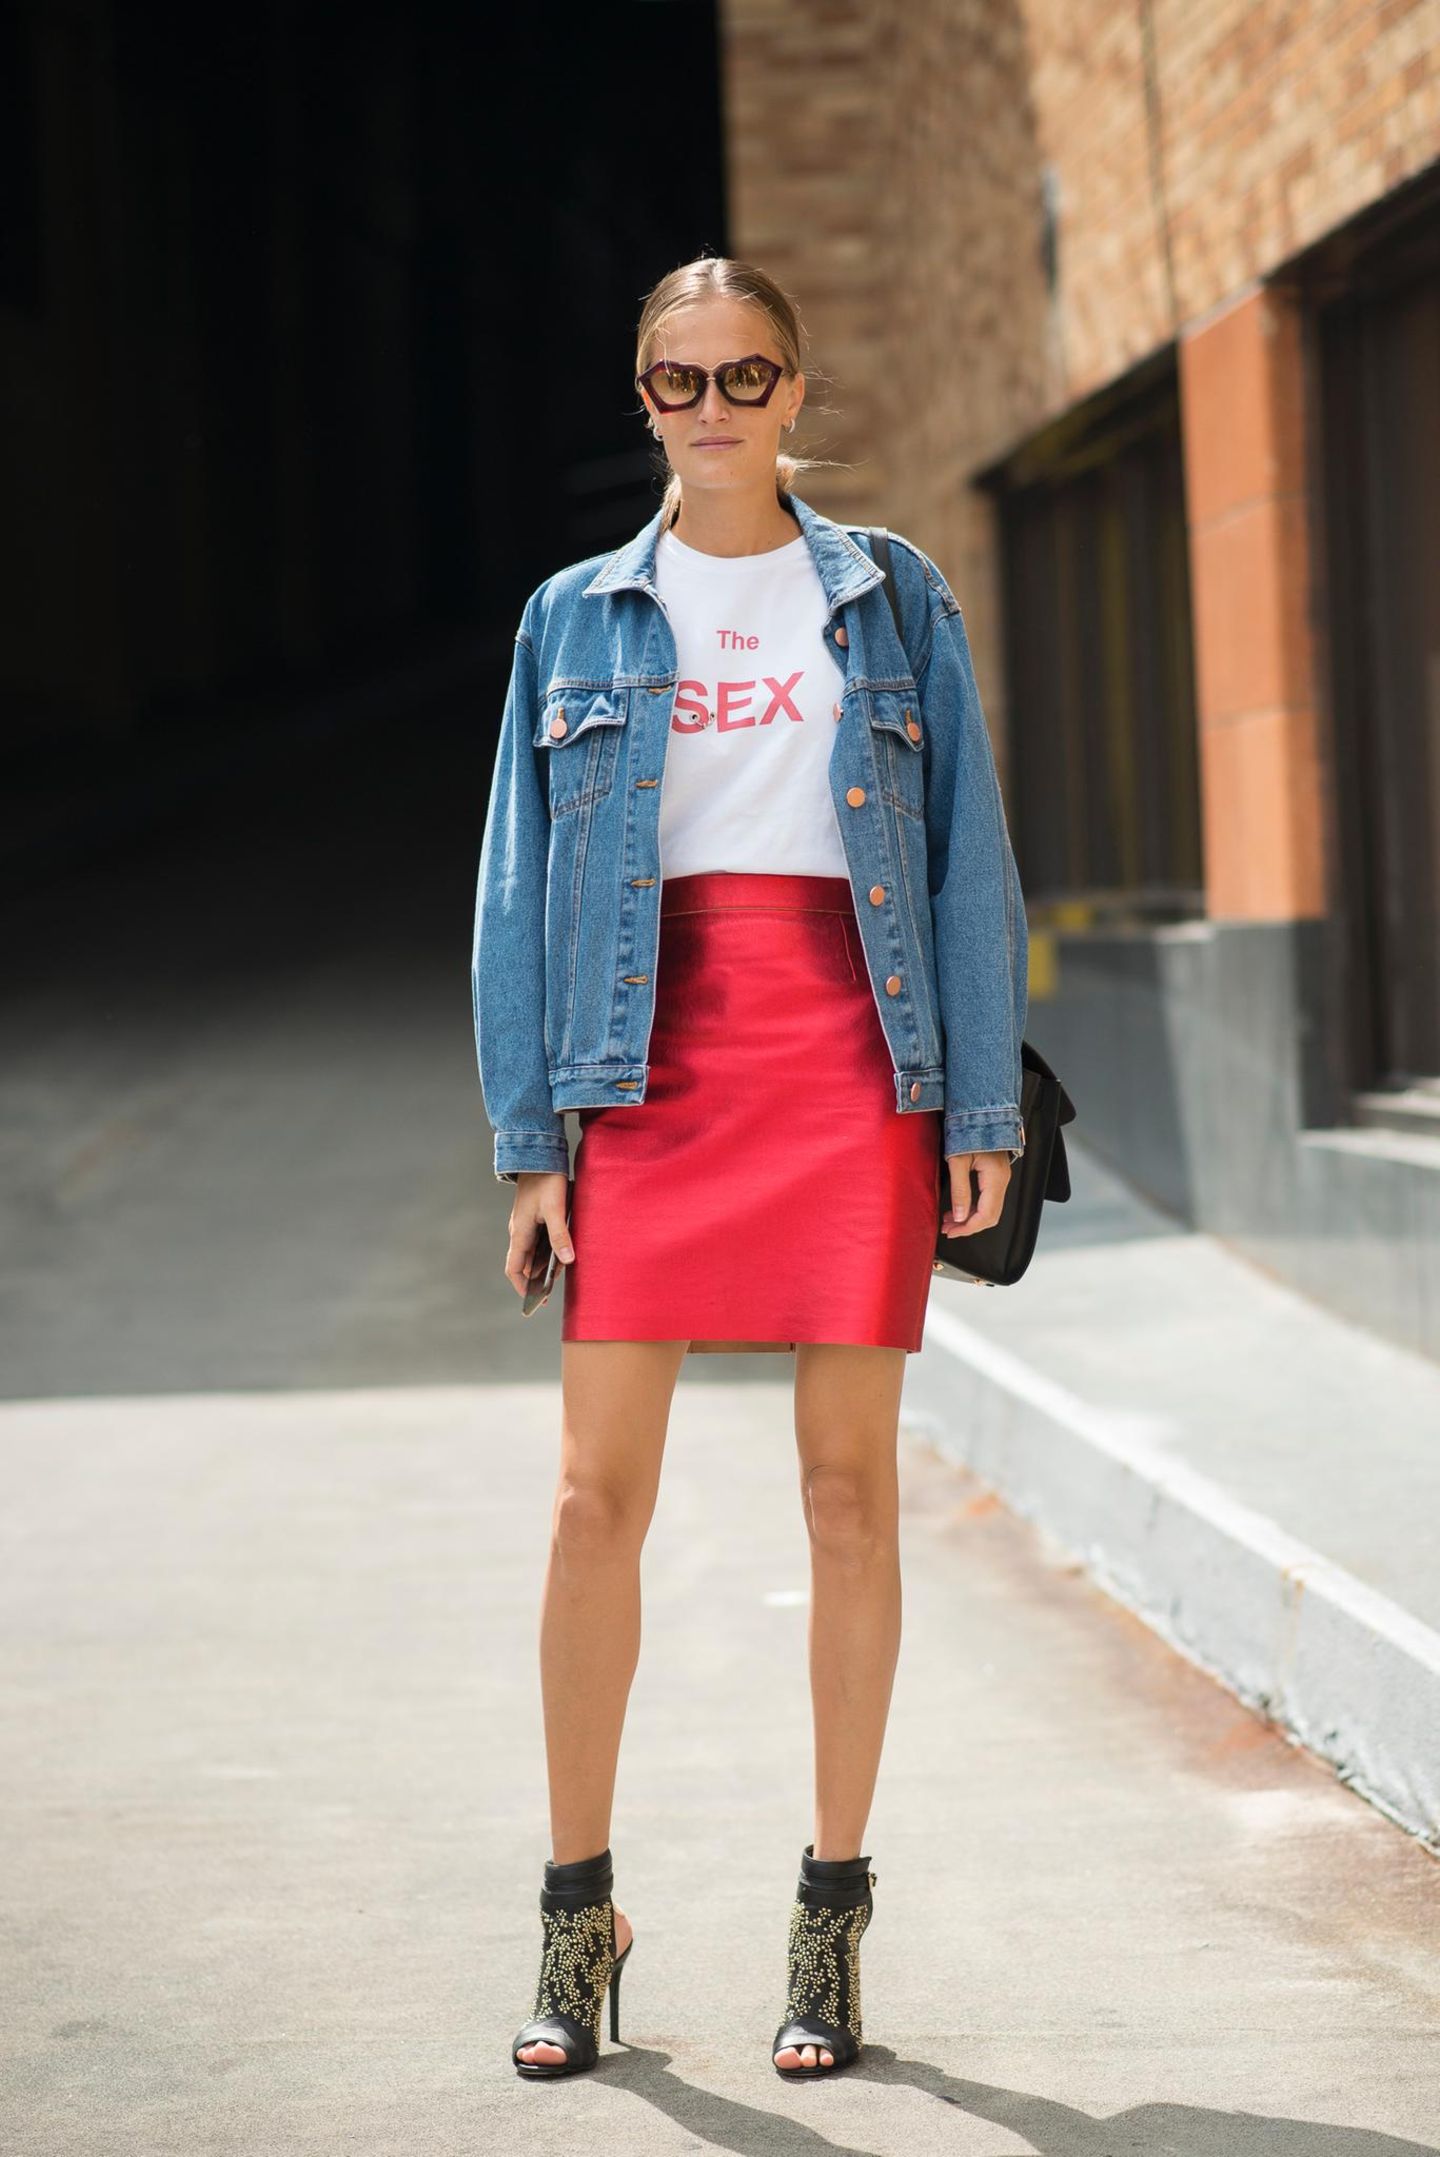 Bloggerin trägt roten Mini zu Statement-Shirt und Oversize-Jeansjacke